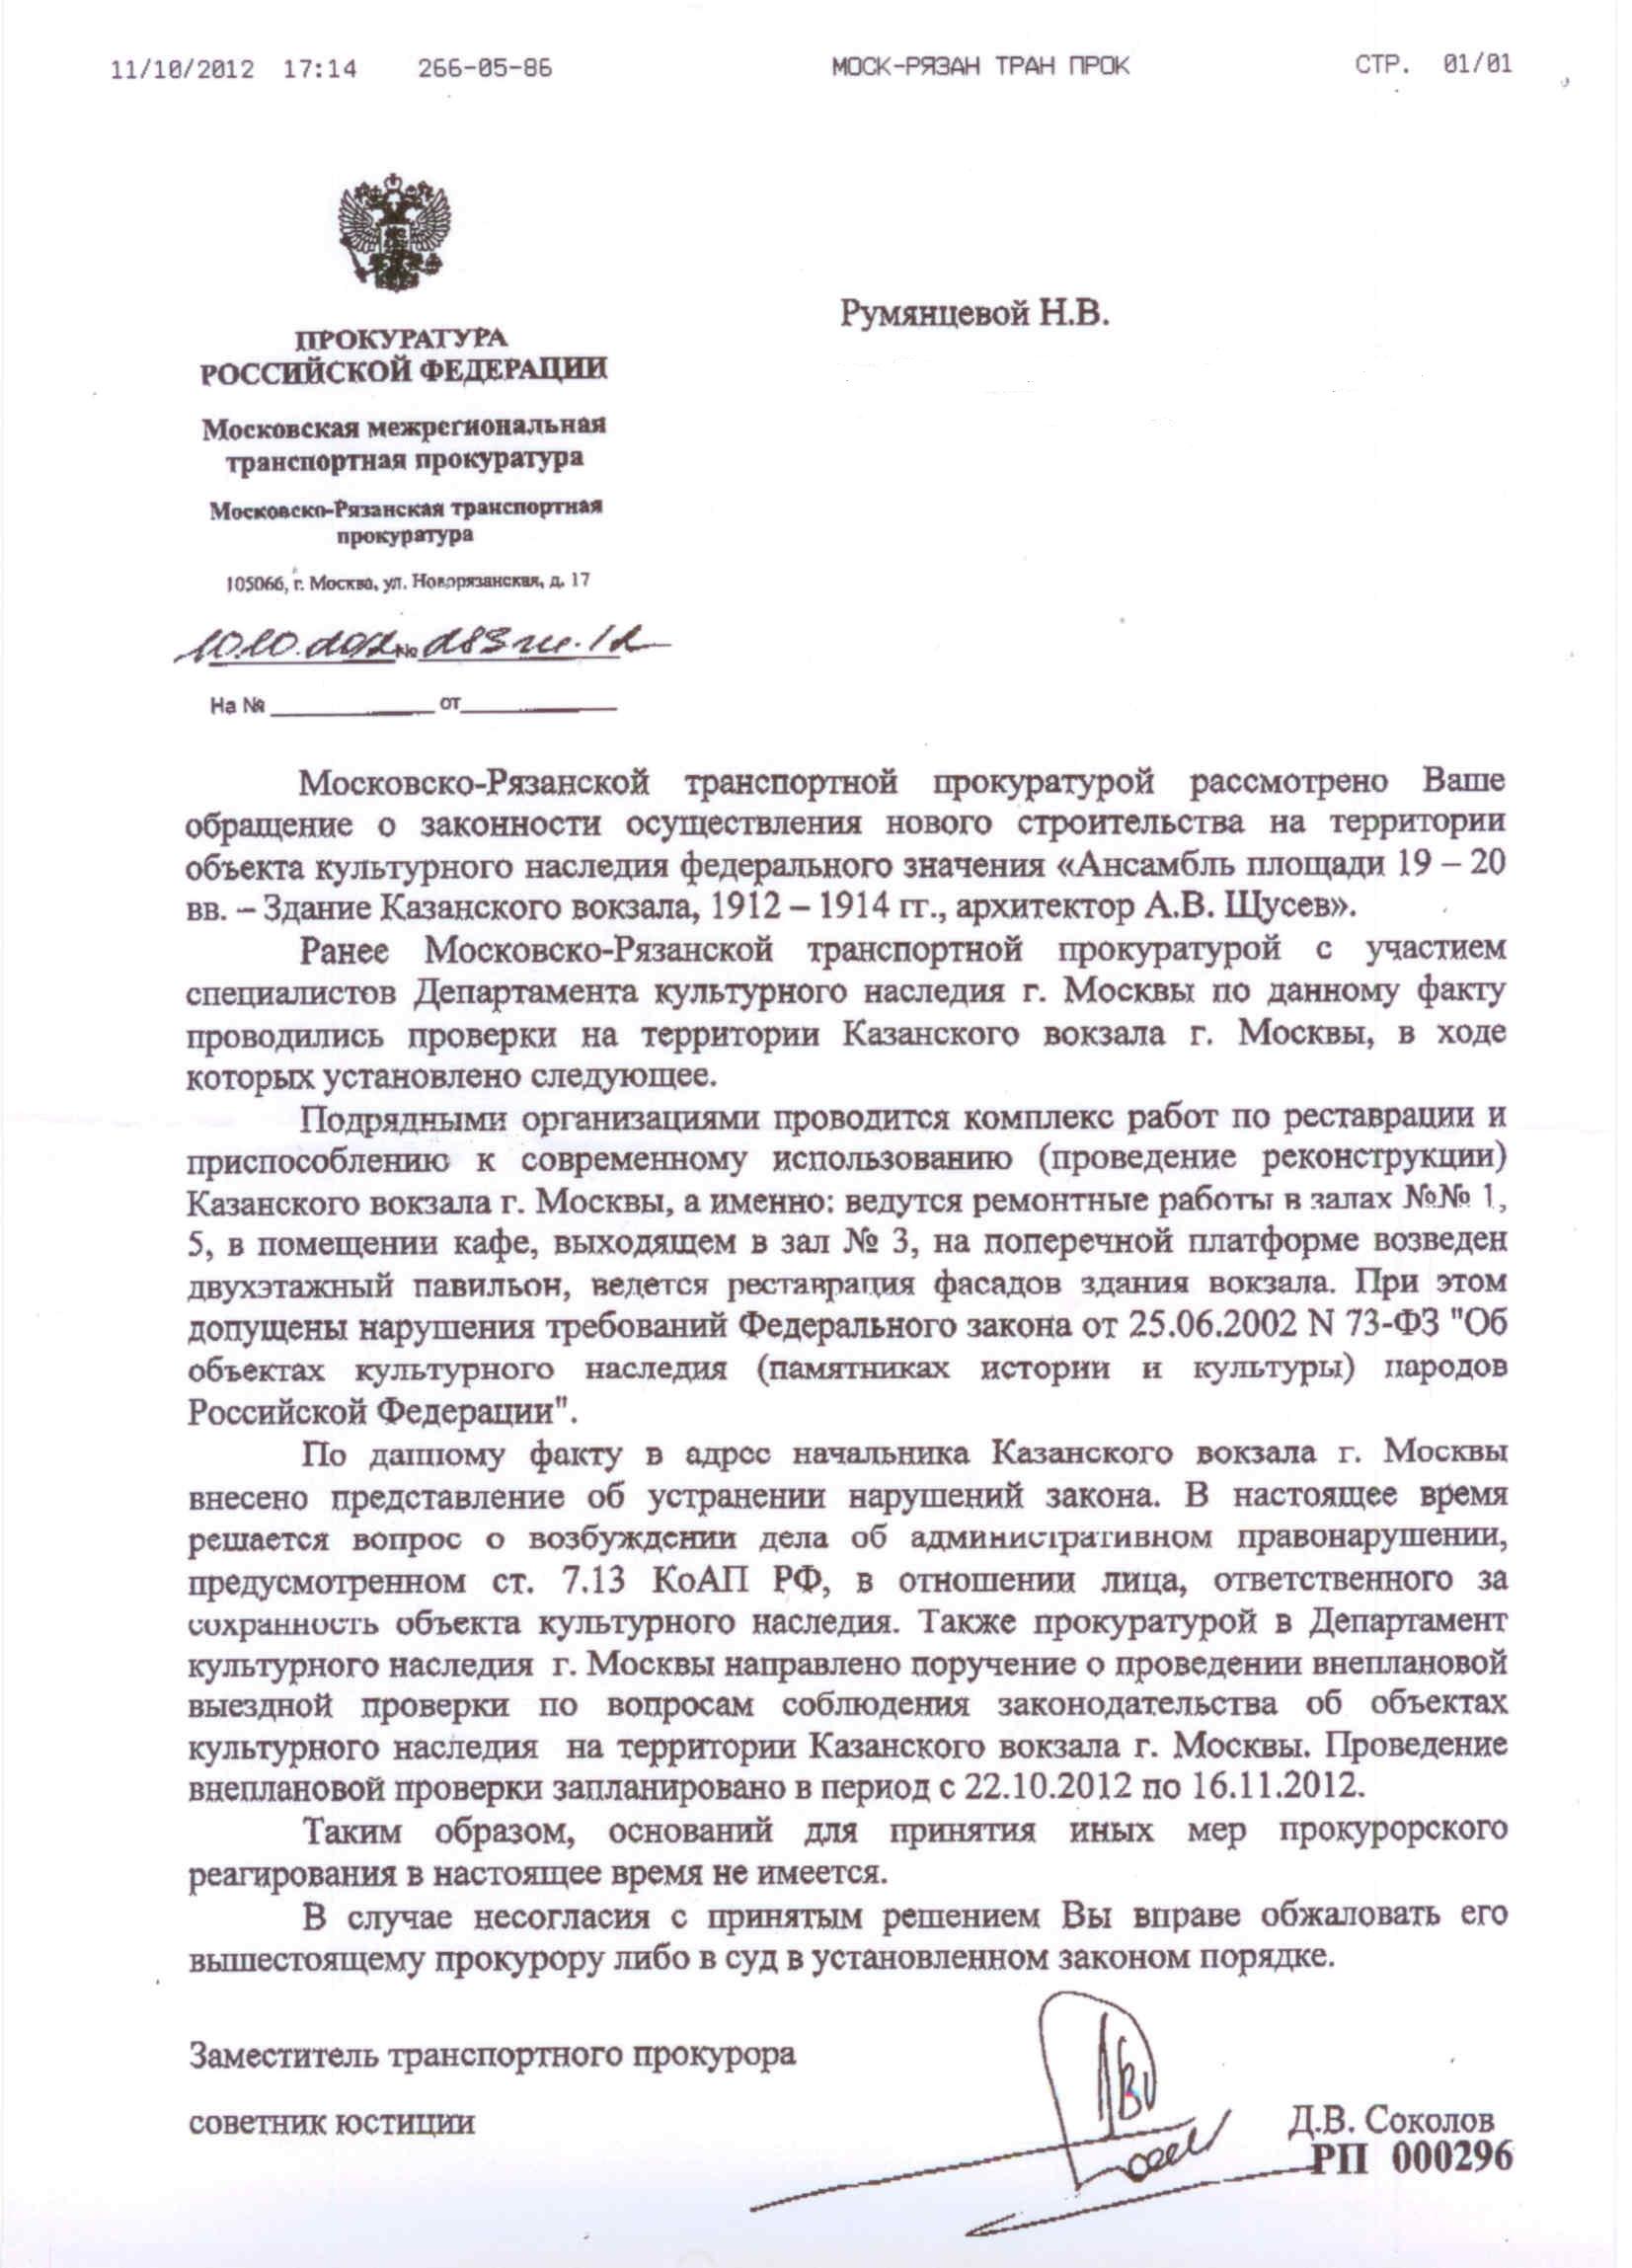 Московська міжрегіональна транспортна прокуратура підтвердила, що на Казанському вокзалі «допущені порушення вимог Федерального закону від 25